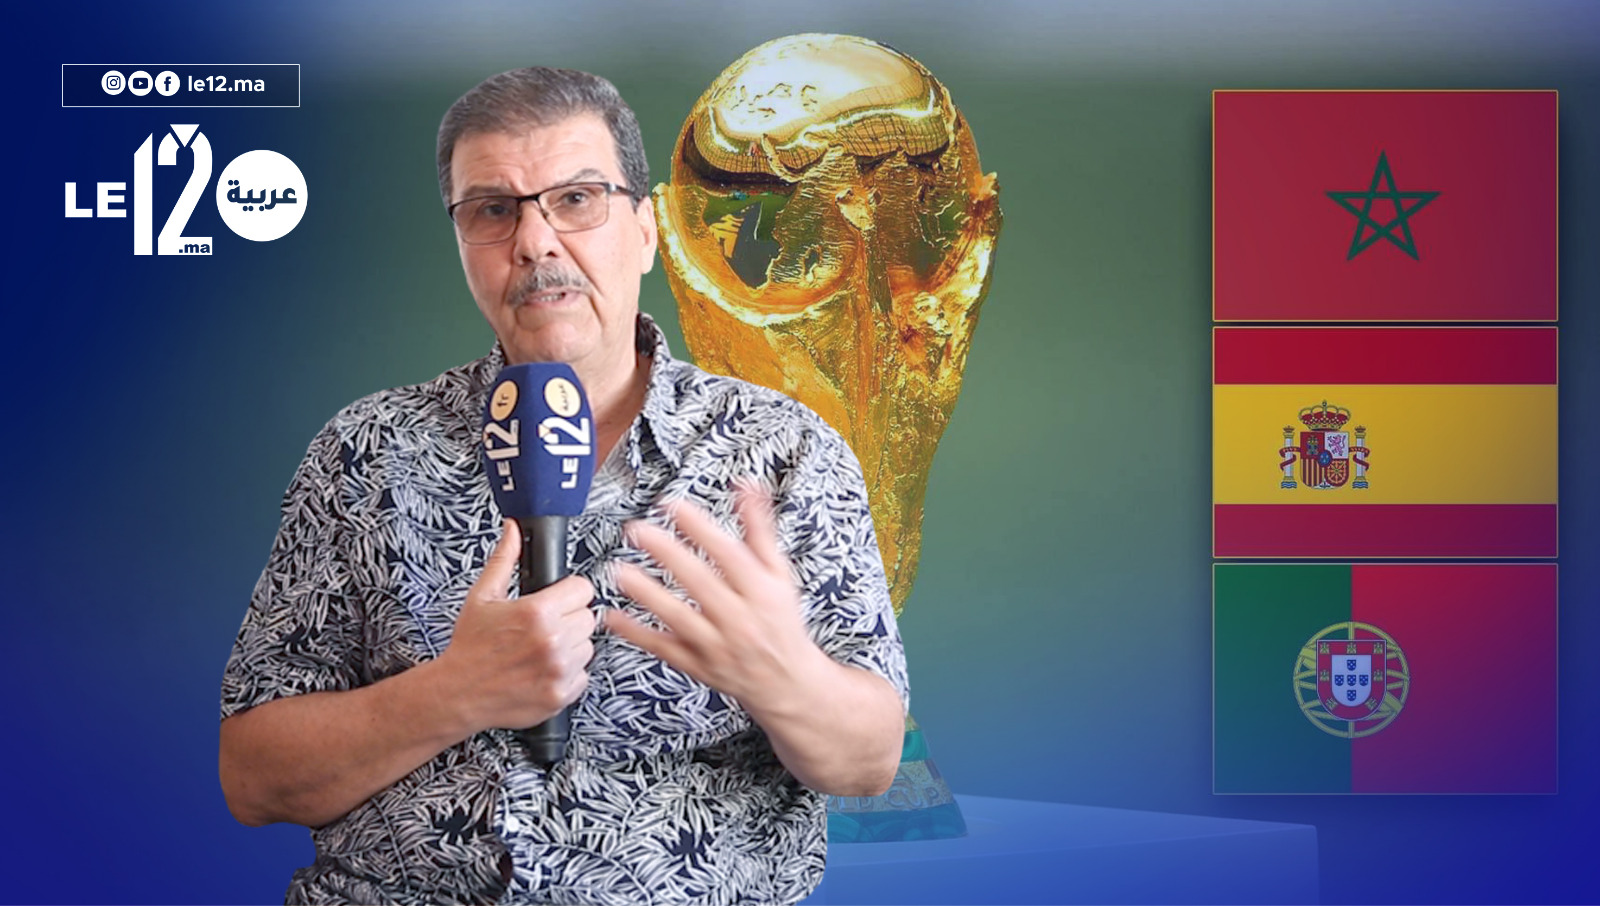 يومير يتحدث عن إستضافة المغرب لكأس العالم 2030